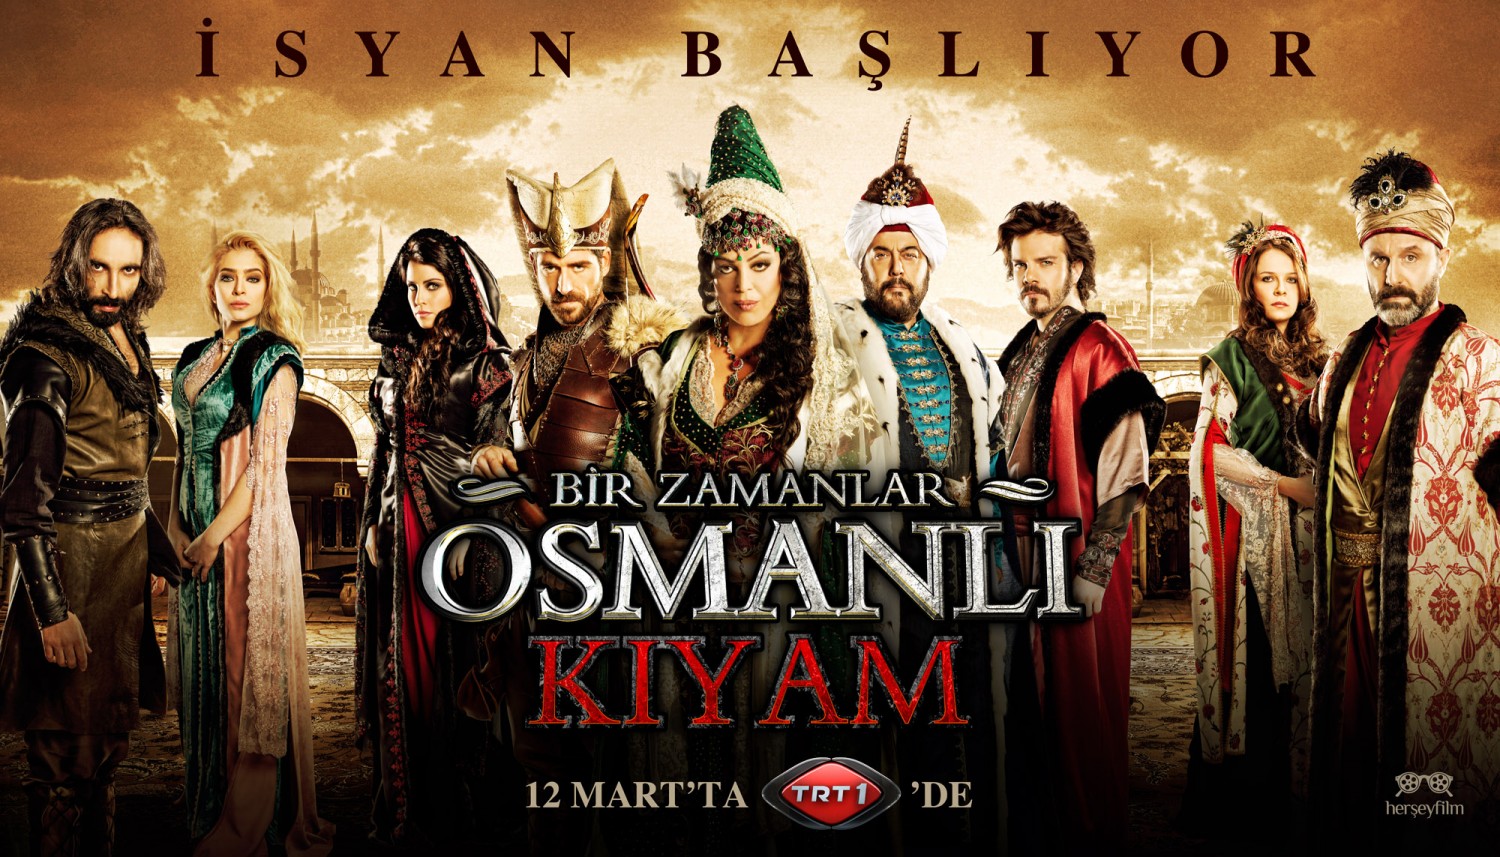 Extra Large TV Poster Image for Bir Zamanlar Osmanli Kiyam (#11 of 26)